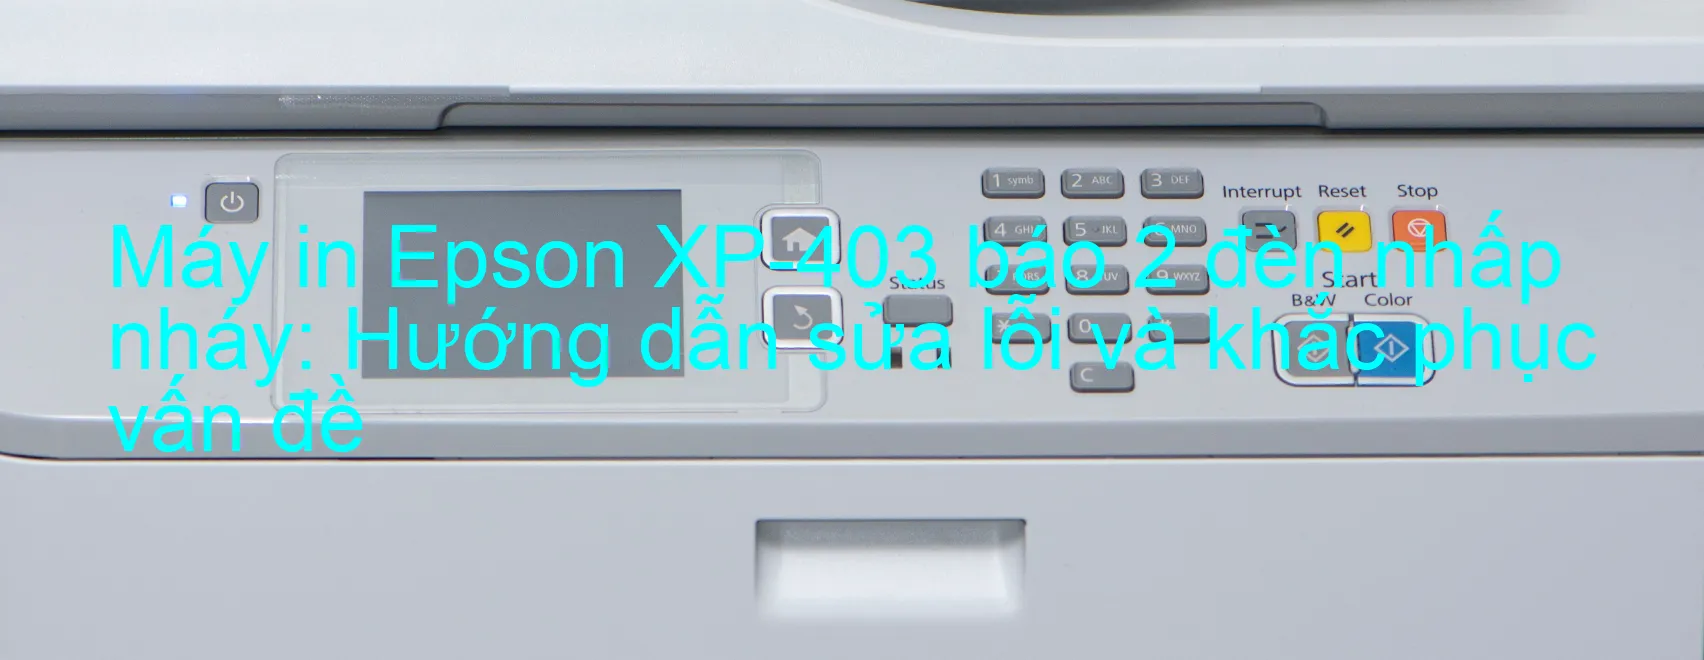 Máy in Epson XP-403 báo 2 đèn nhấp nháy: Hướng dẫn sửa lỗi và khắc phục vấn đề